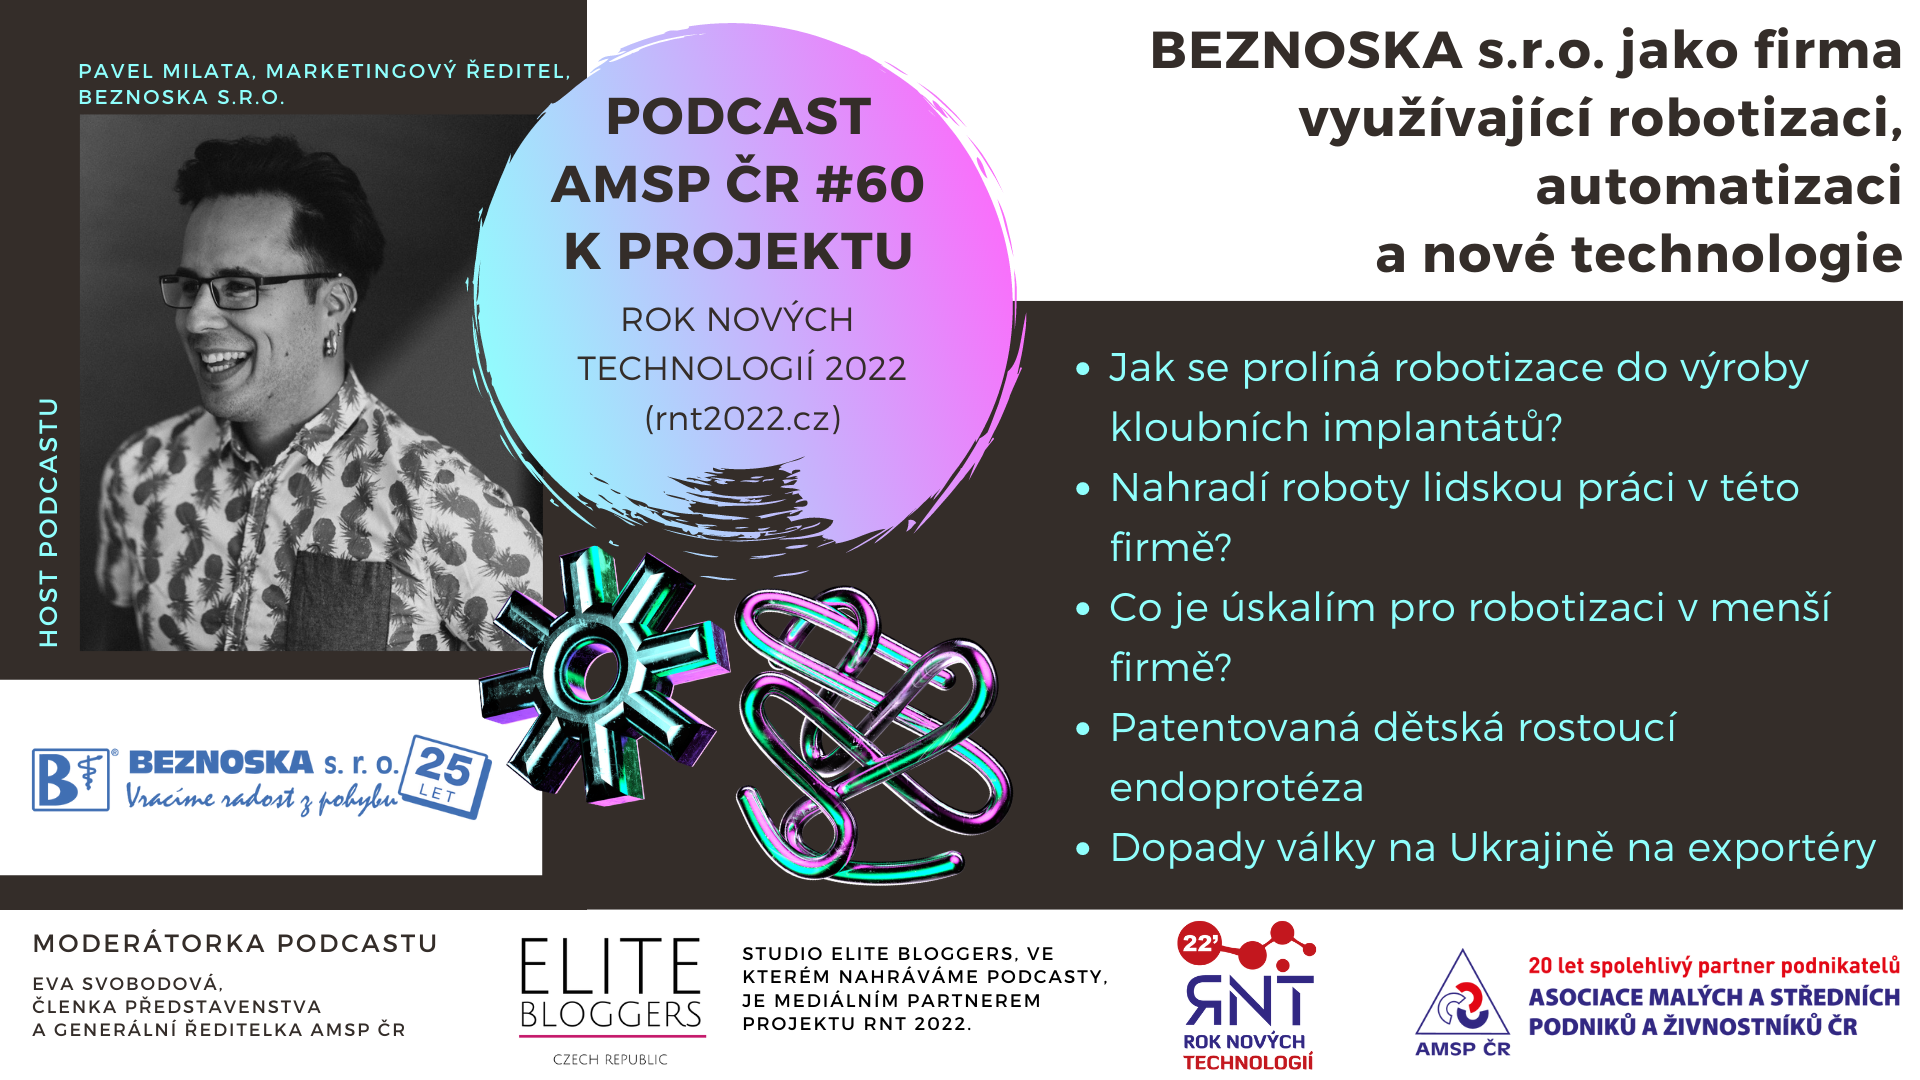 Podcast_banner_RNT_2022_YouTube_BEZNOSKA_s-r-o-_jako_firma_vyuzivajici_robotizaci_automatizaci_a_nove_technologie_2